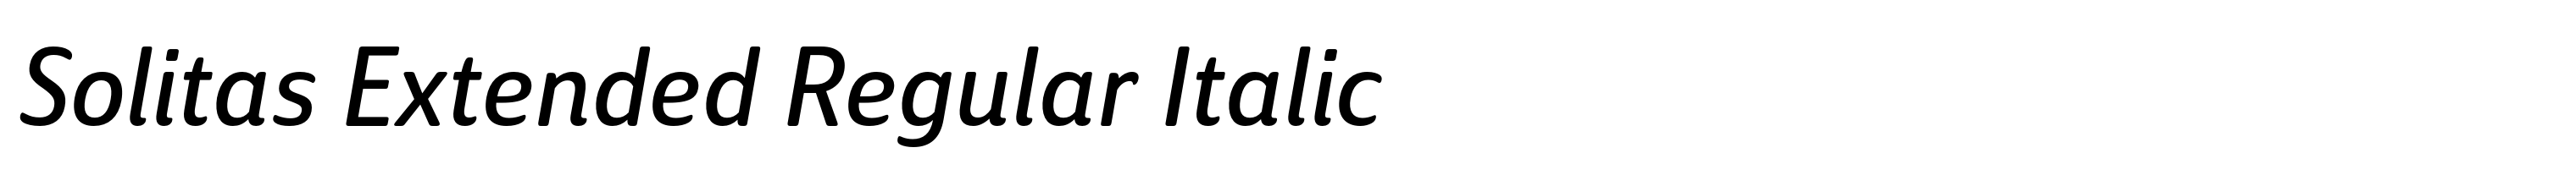 Solitas Extended Regular Italic